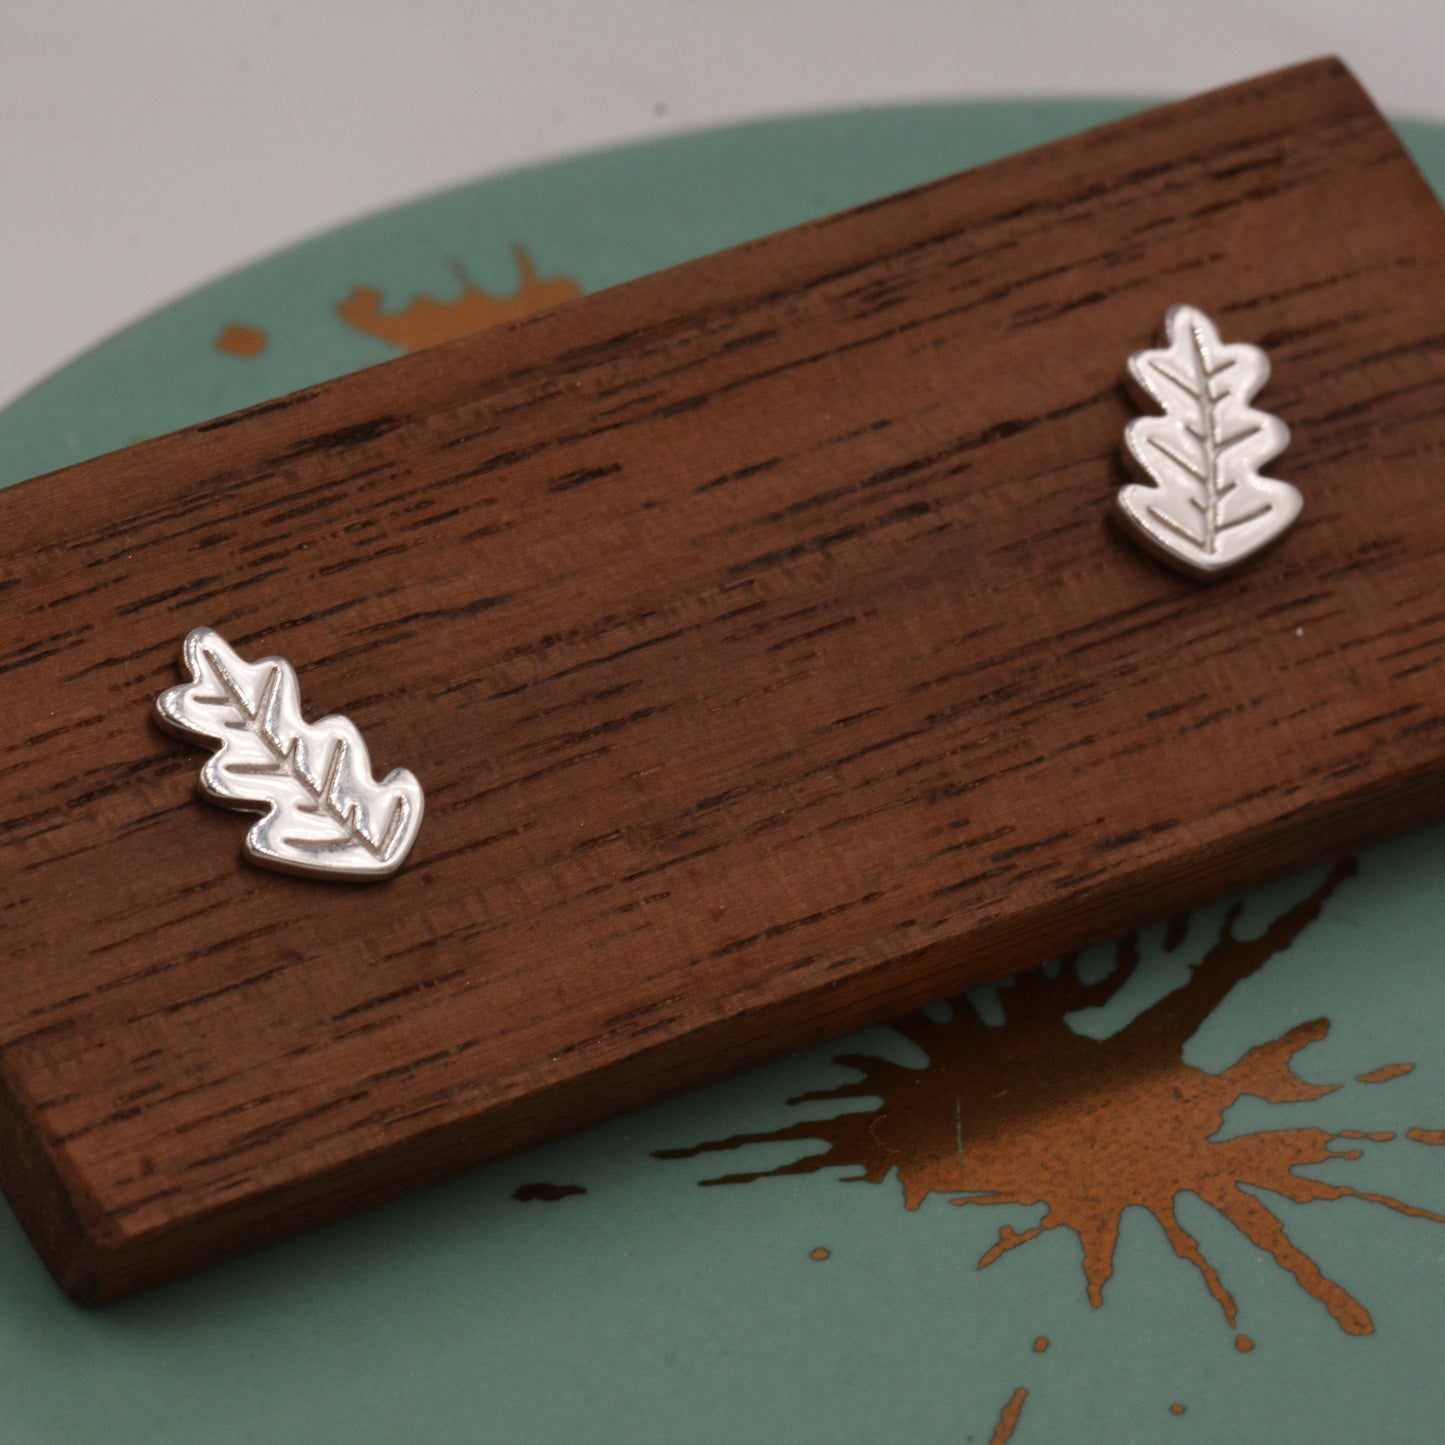 Oak Leaf Stud Earrings in Sterling Silver, Petite Acorn Leaf Earrings, Small Leaf Stud, Nature Inspired